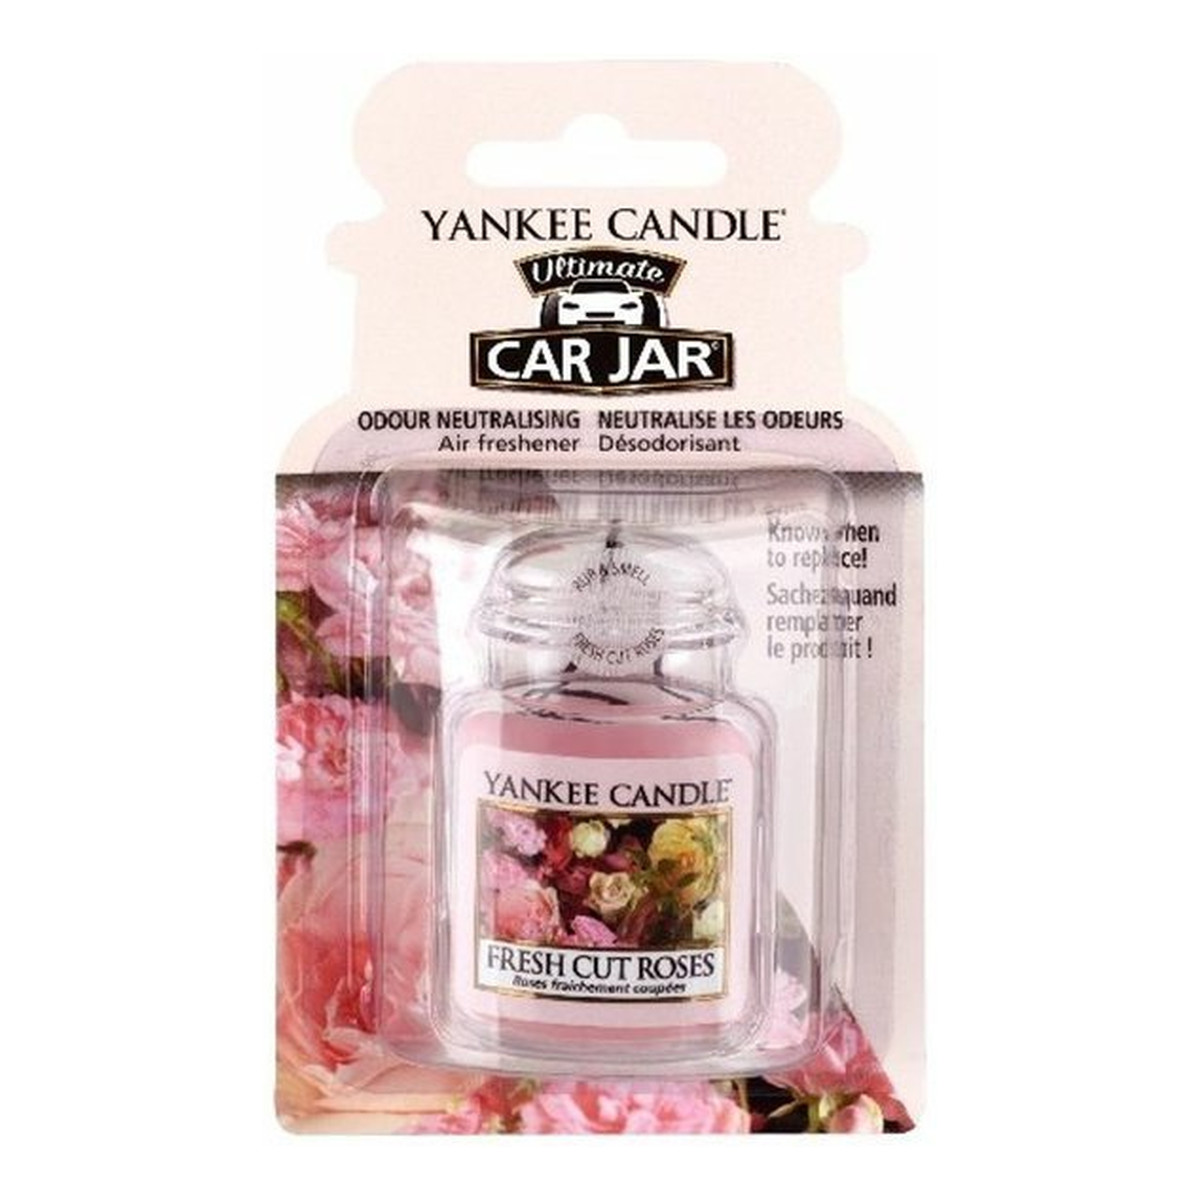 Yankee Candle car jar Ultimate wiszący odświeżacz do samochodu Fresh Cut Roses